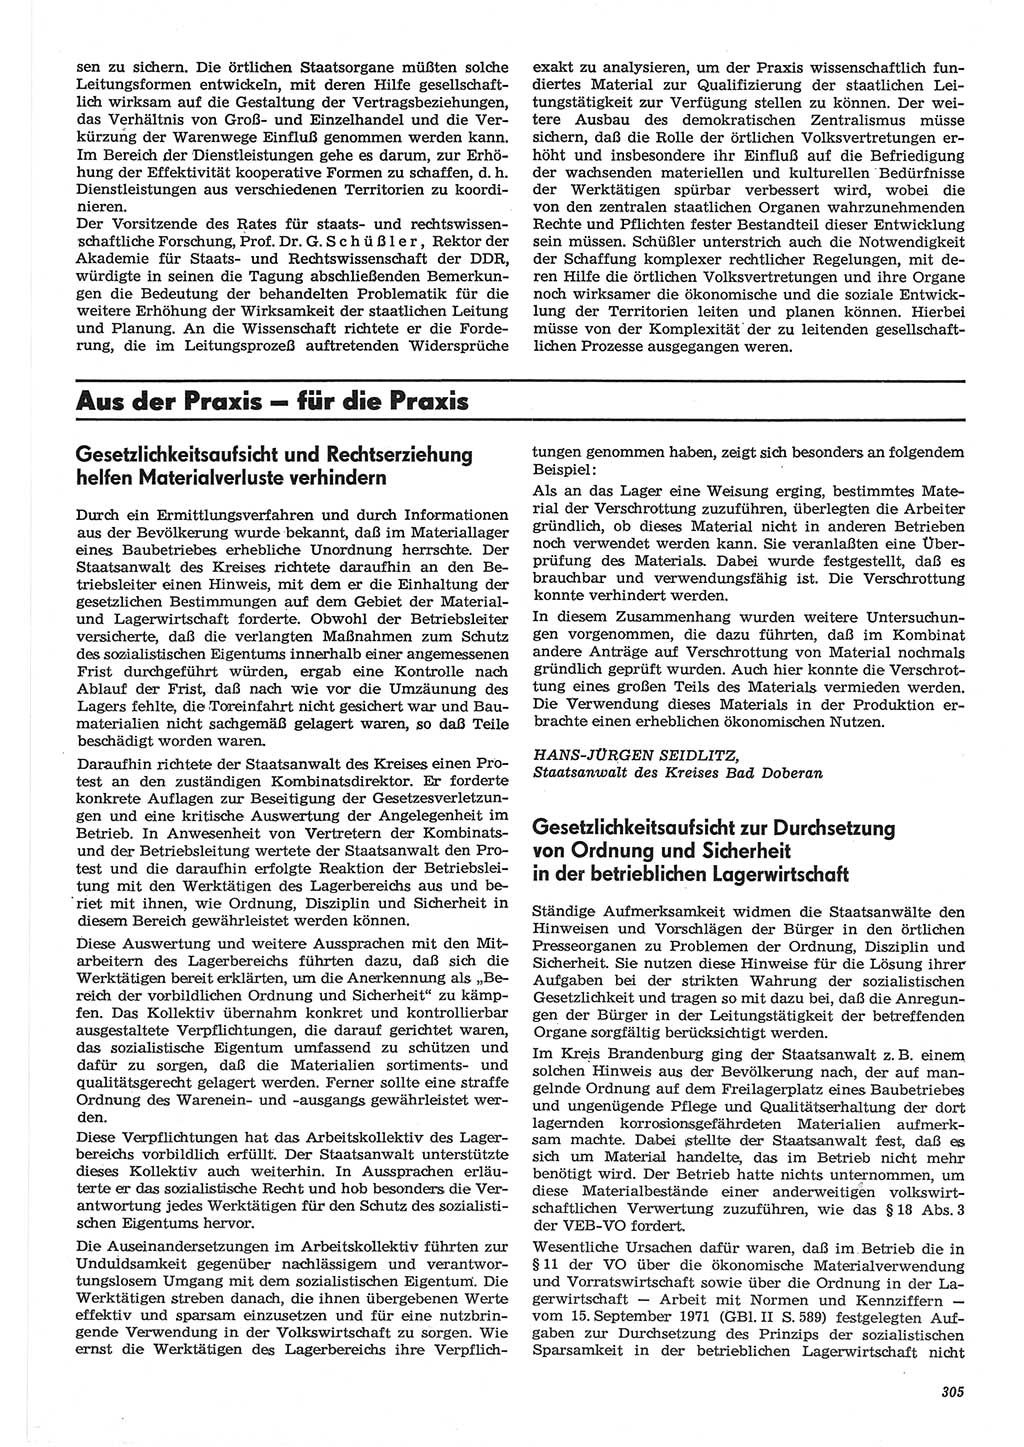 Neue Justiz (NJ), Zeitschrift für Recht und Rechtswissenschaft-Zeitschrift, sozialistisches Recht und Gesetzlichkeit, 31. Jahrgang 1977, Seite 305 (NJ DDR 1977, S. 305)